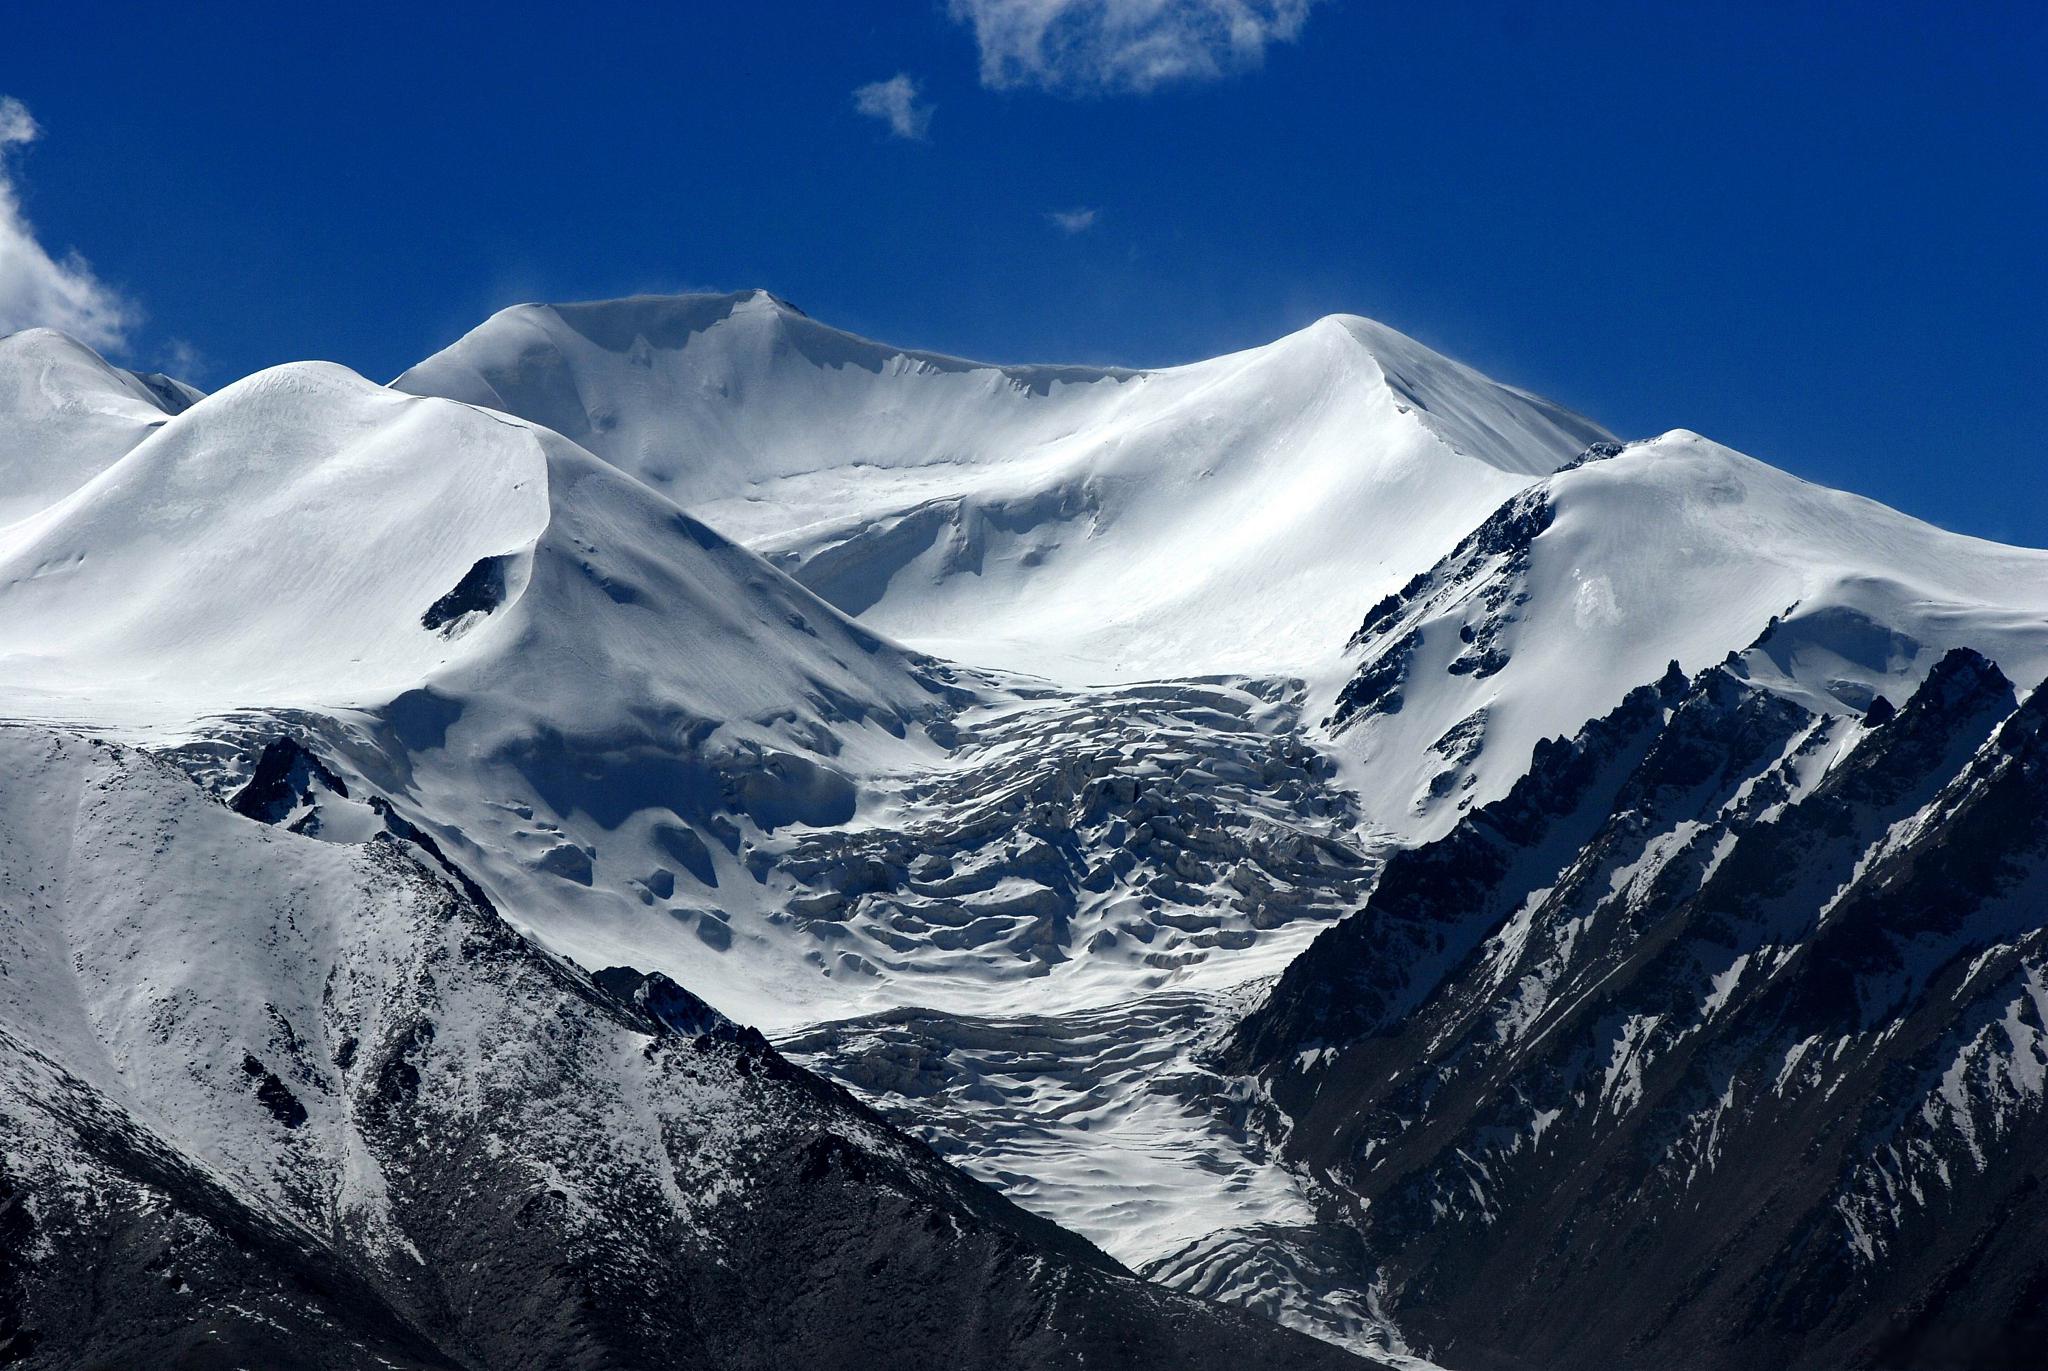 山:中华文明的精神家园 昆仑山,被誉为中华文明的龙脉,横跨中国新疆